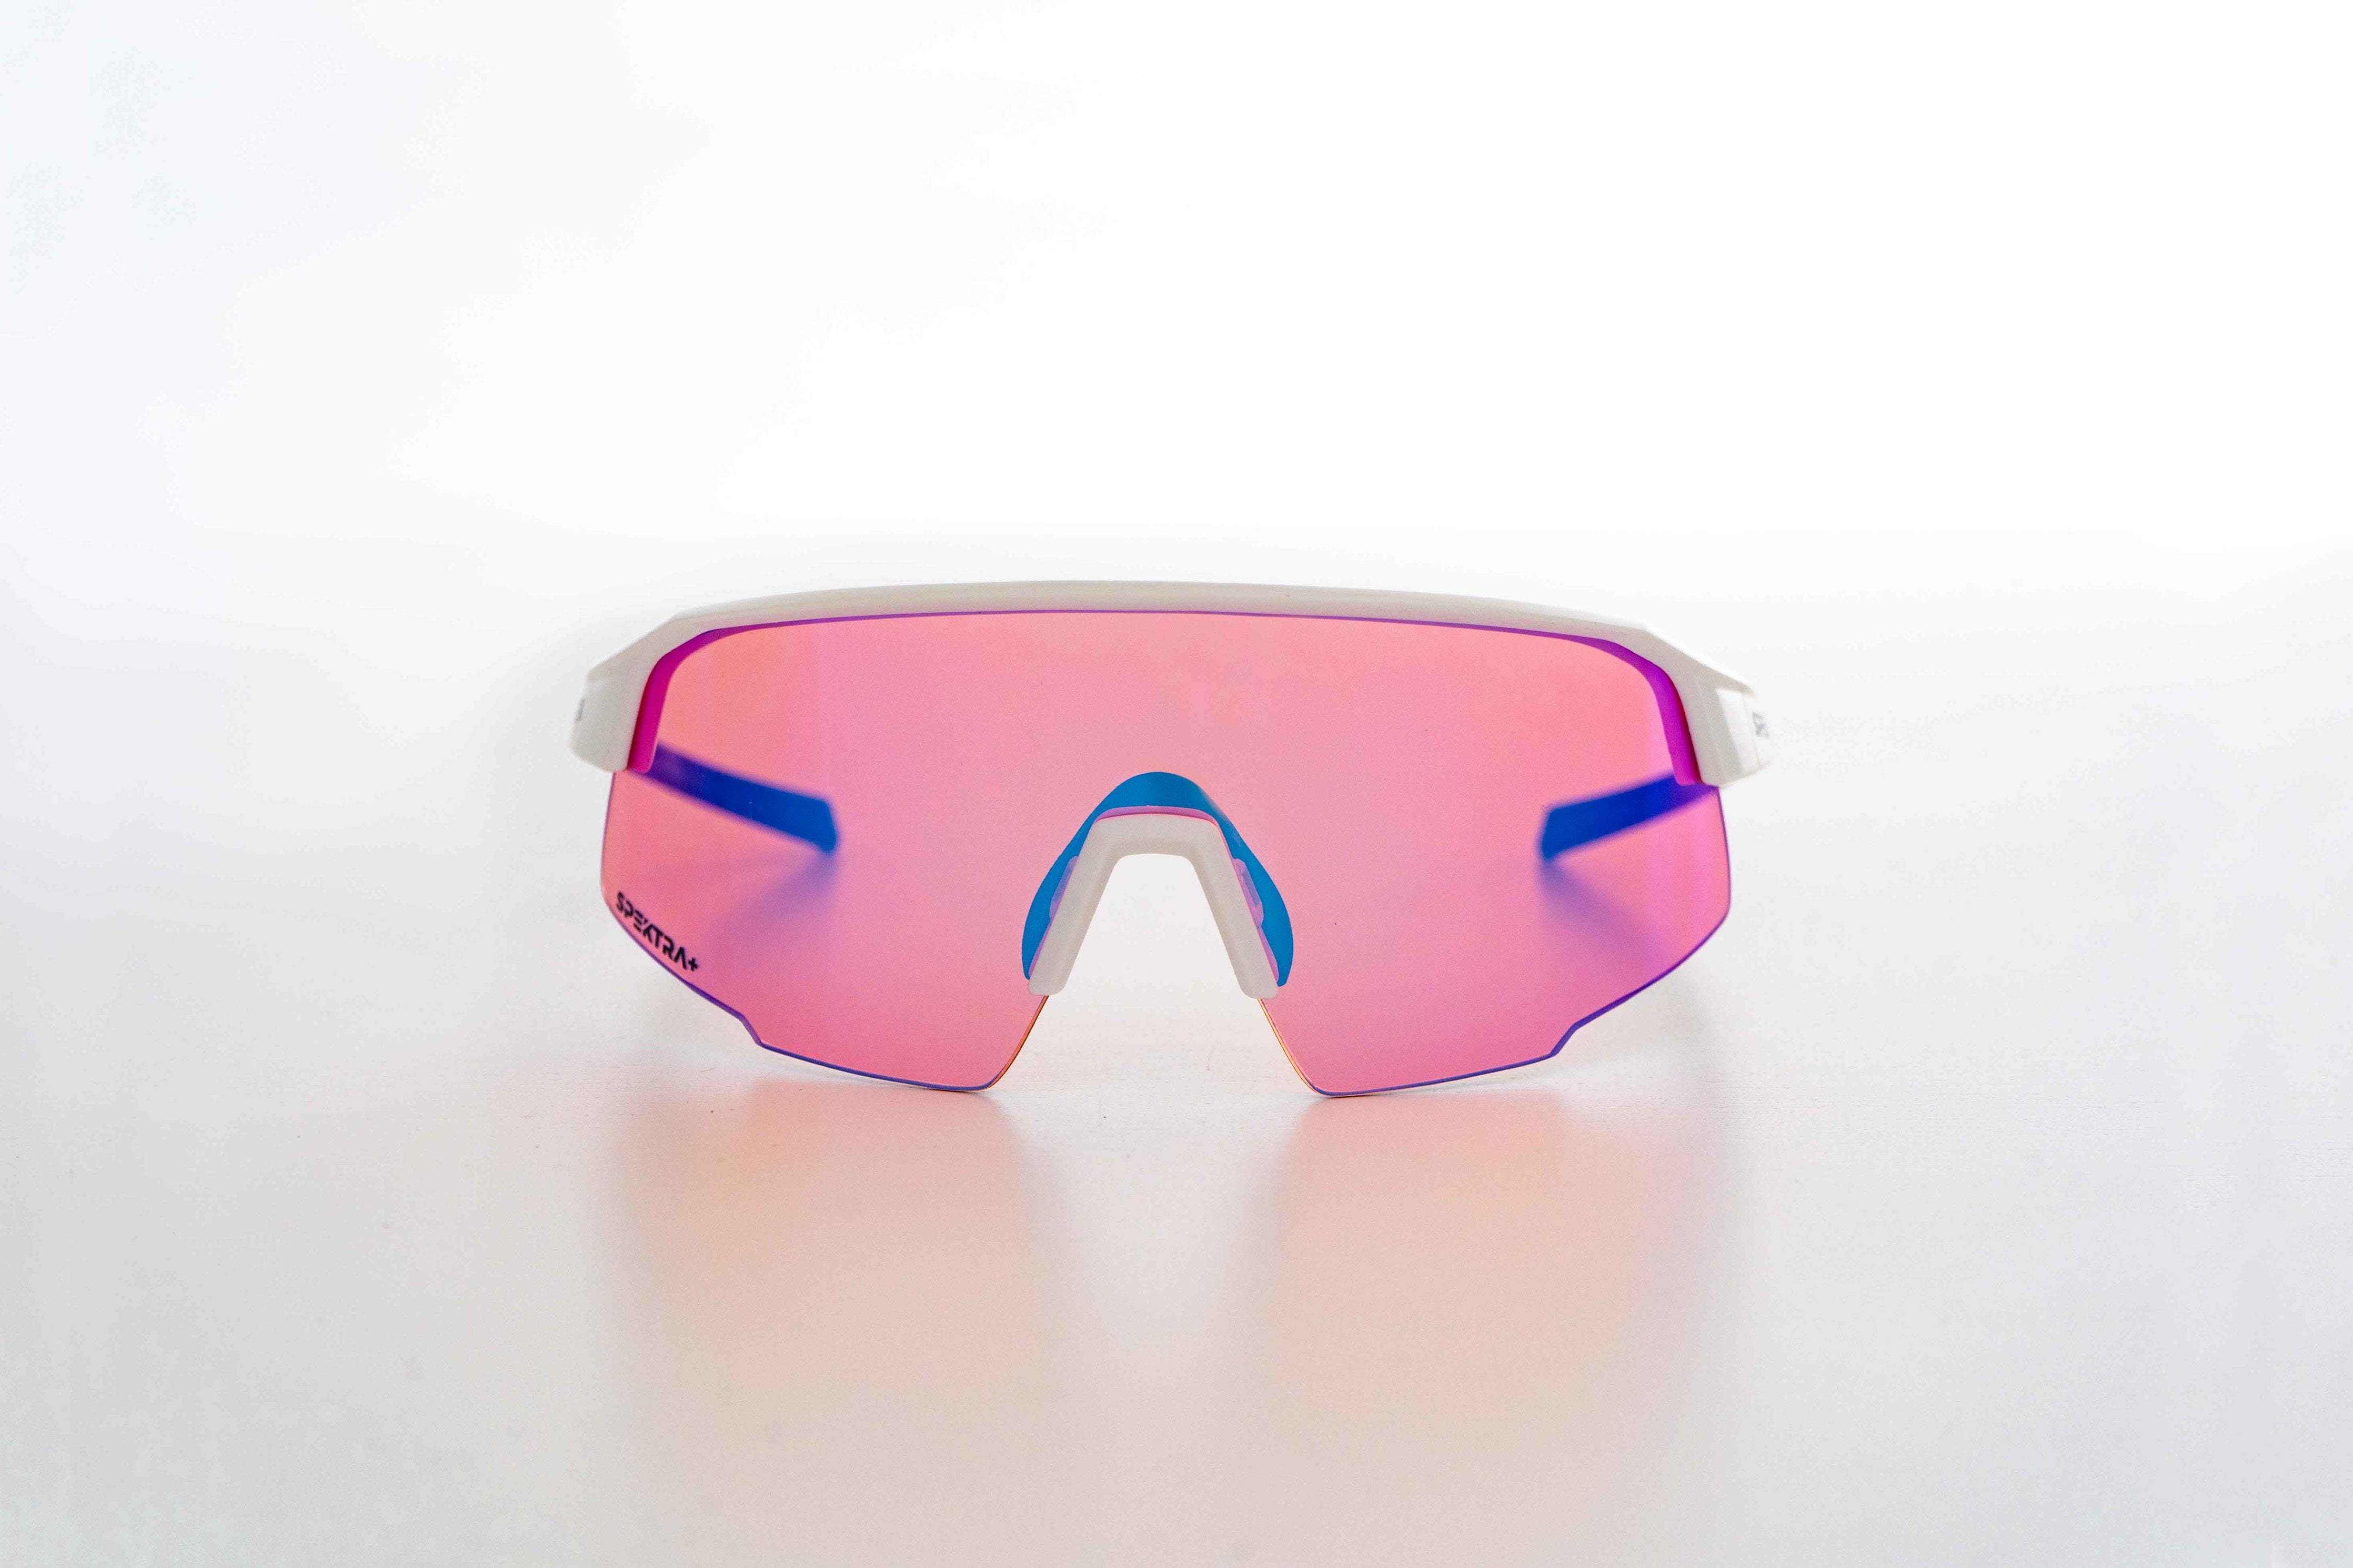 Modèle summit lunette de soleil avec lentille rose et cadre blanc